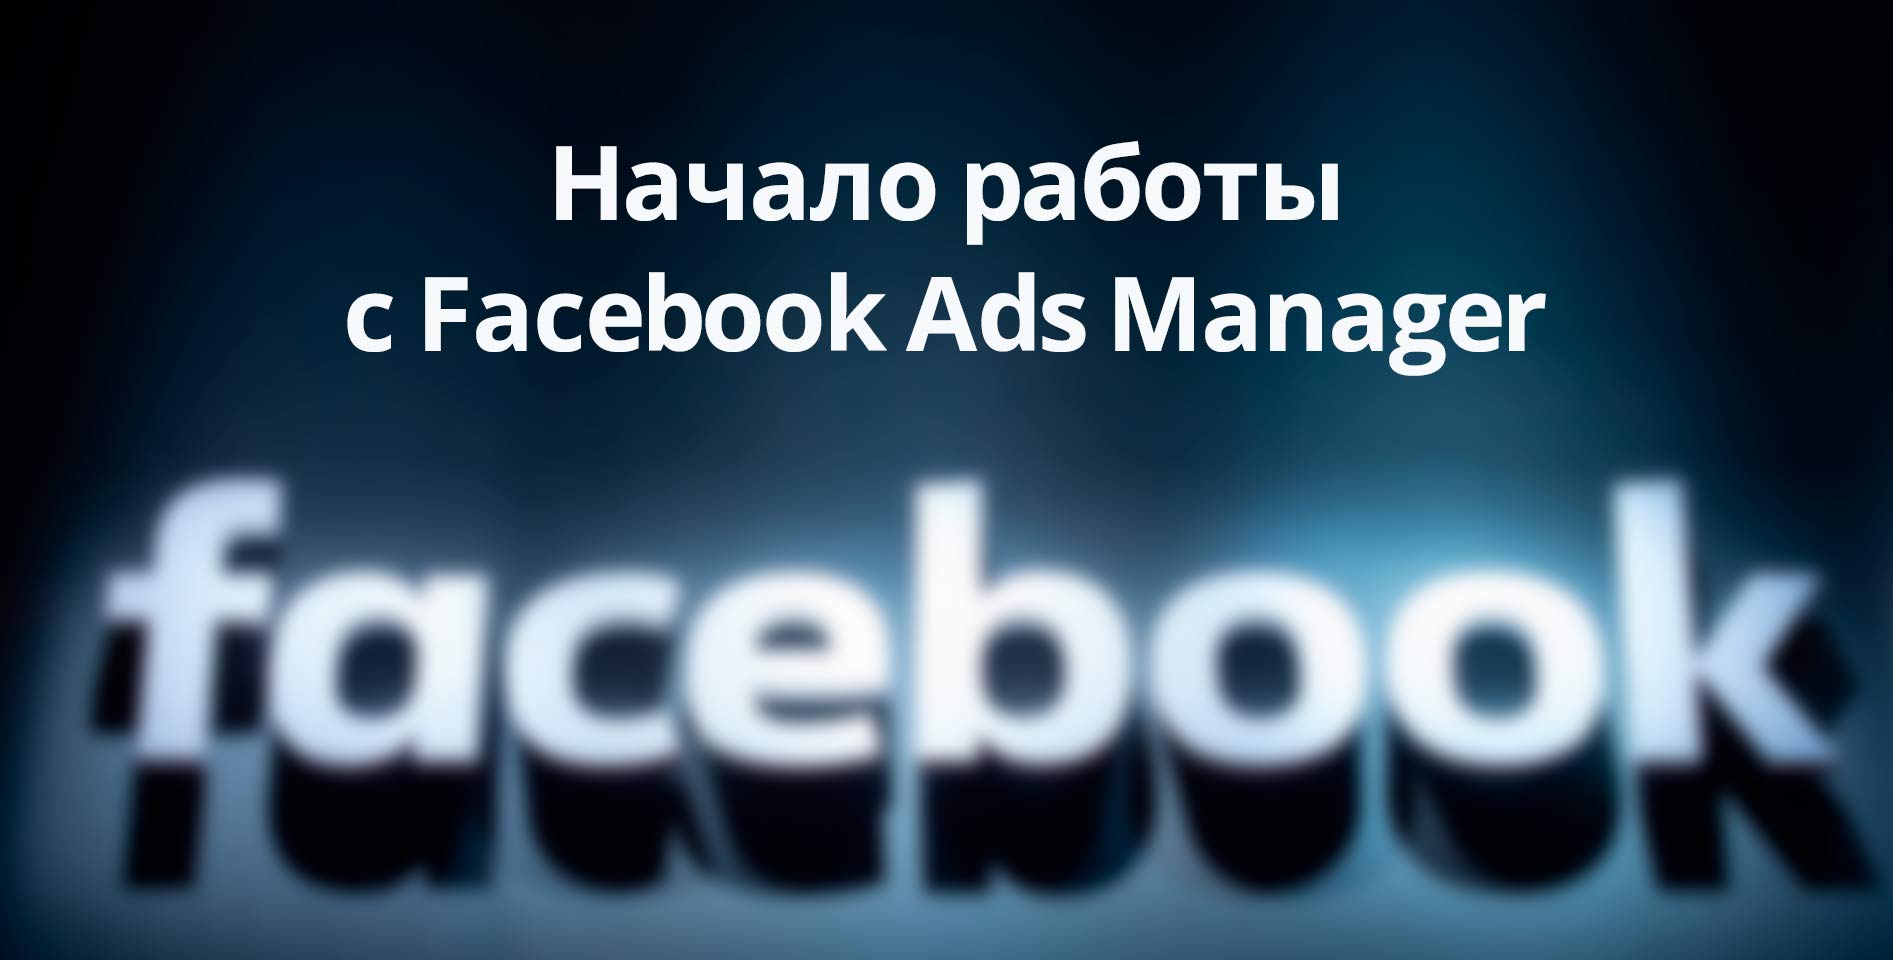 Facebook — Начало работы с Facebook Ads Manager